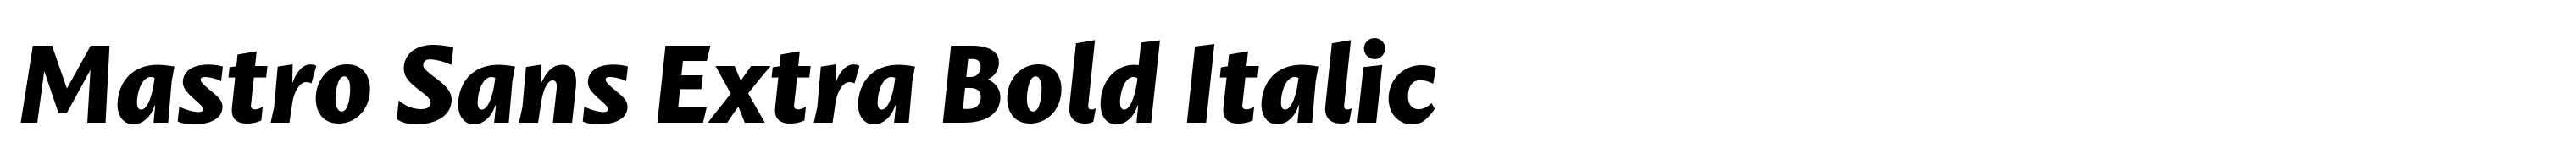 Mastro Sans Extra Bold Italic